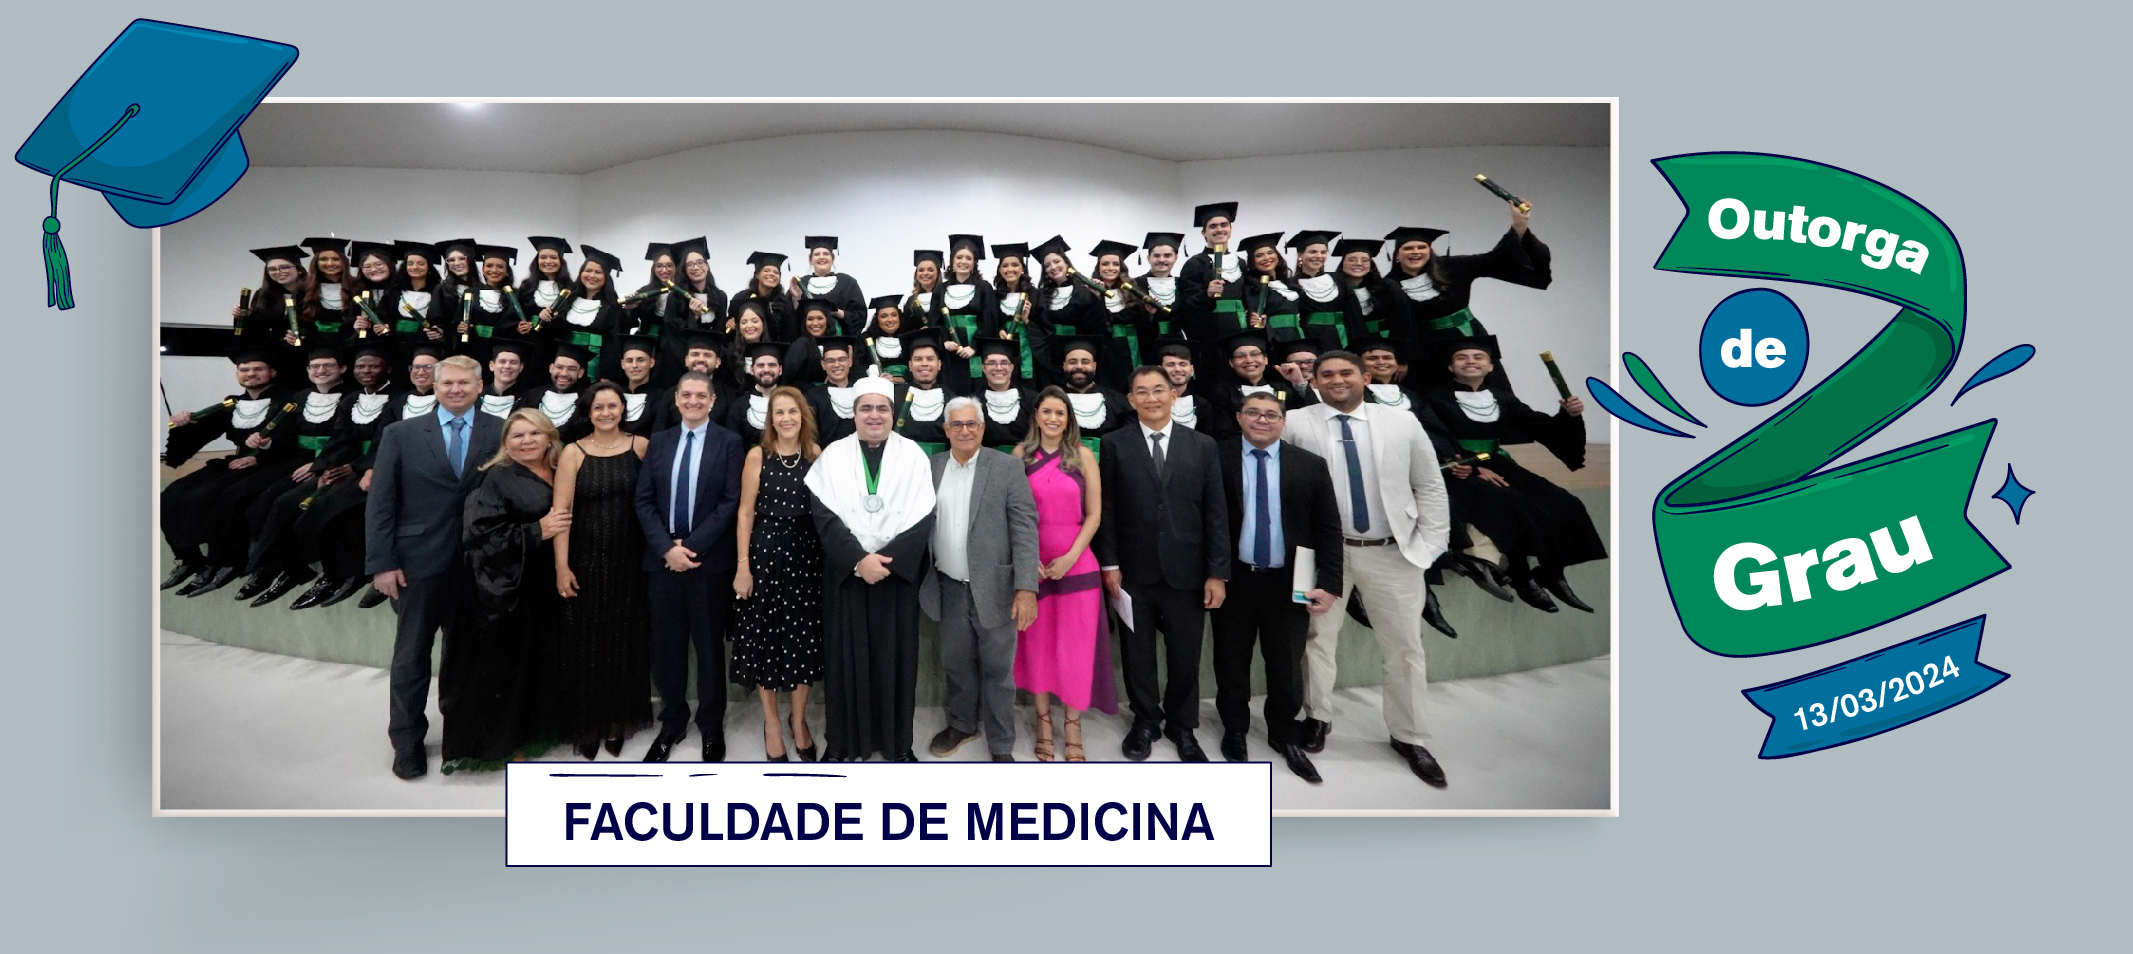 Ufam realiza outorga de grau a formandos da Faculdade de Medicina